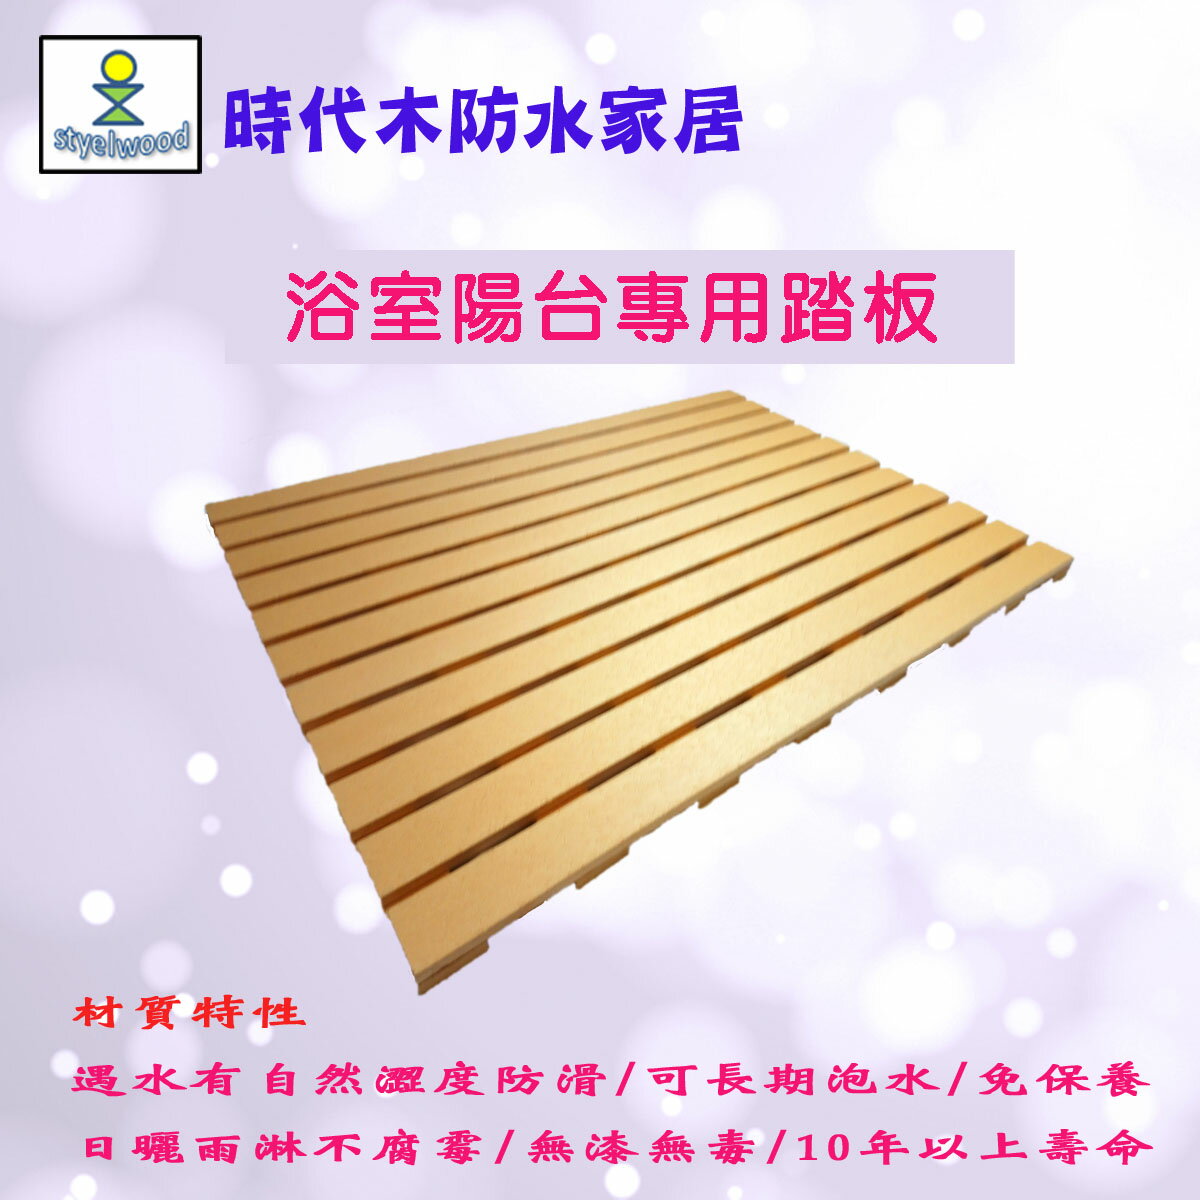 防水防滑浴室踏板(B材90x65x2.4cm)/浴室地板/陽台地板/ 戶外地板/防滑踏